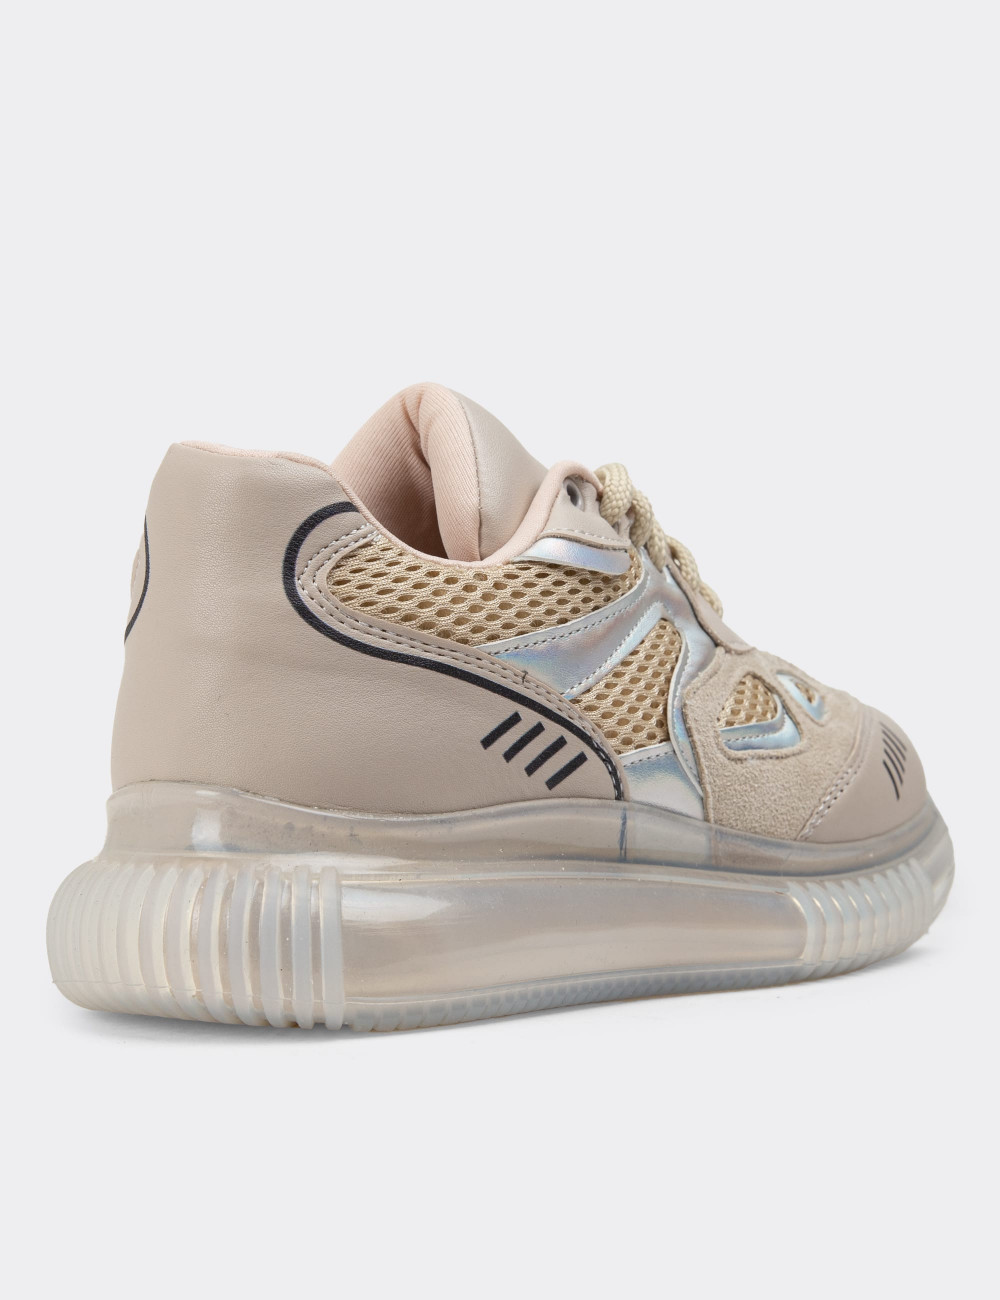 Bej Sneaker Kadın Ayakkabı - K1060ZBEJP01